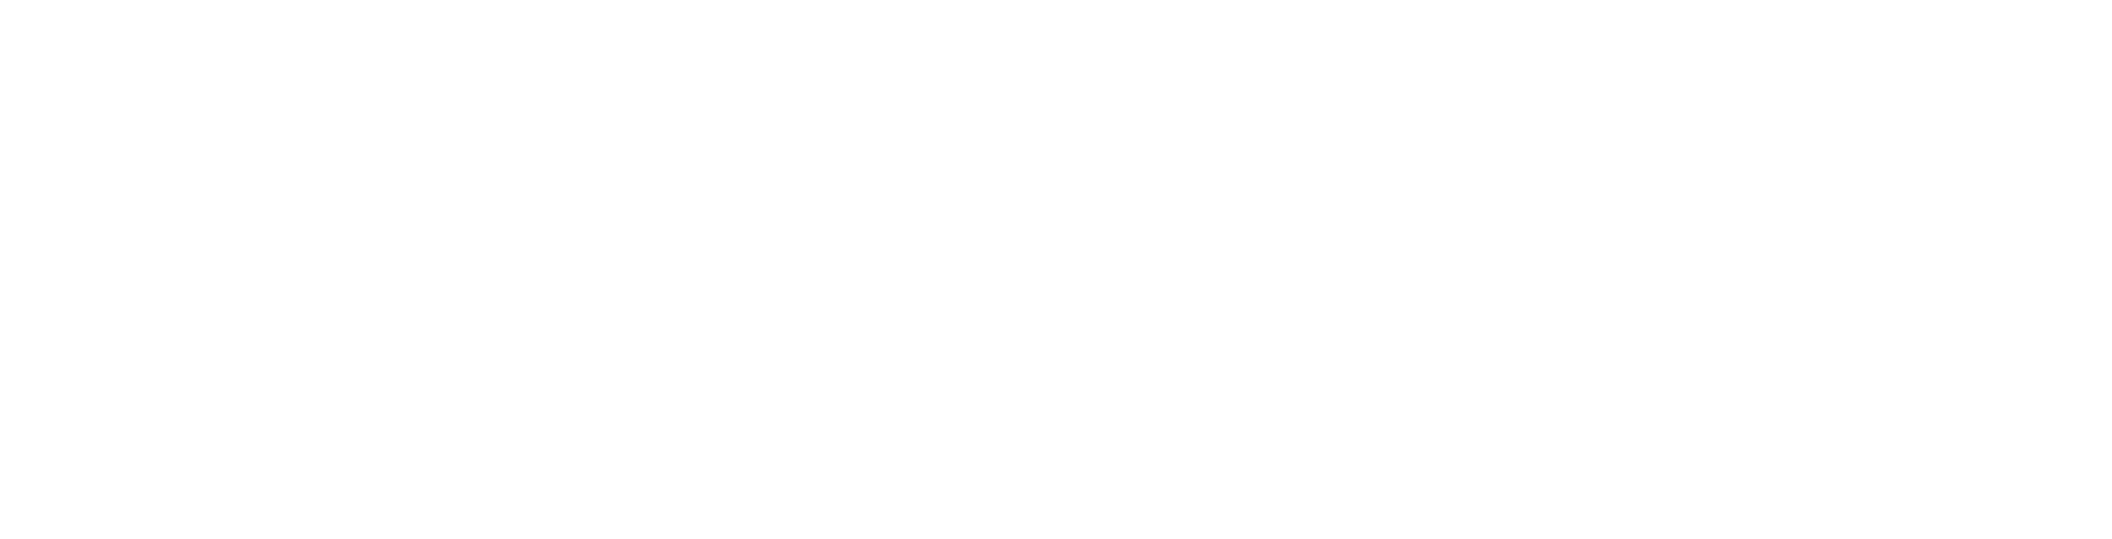 Roboyo Academy logo in white